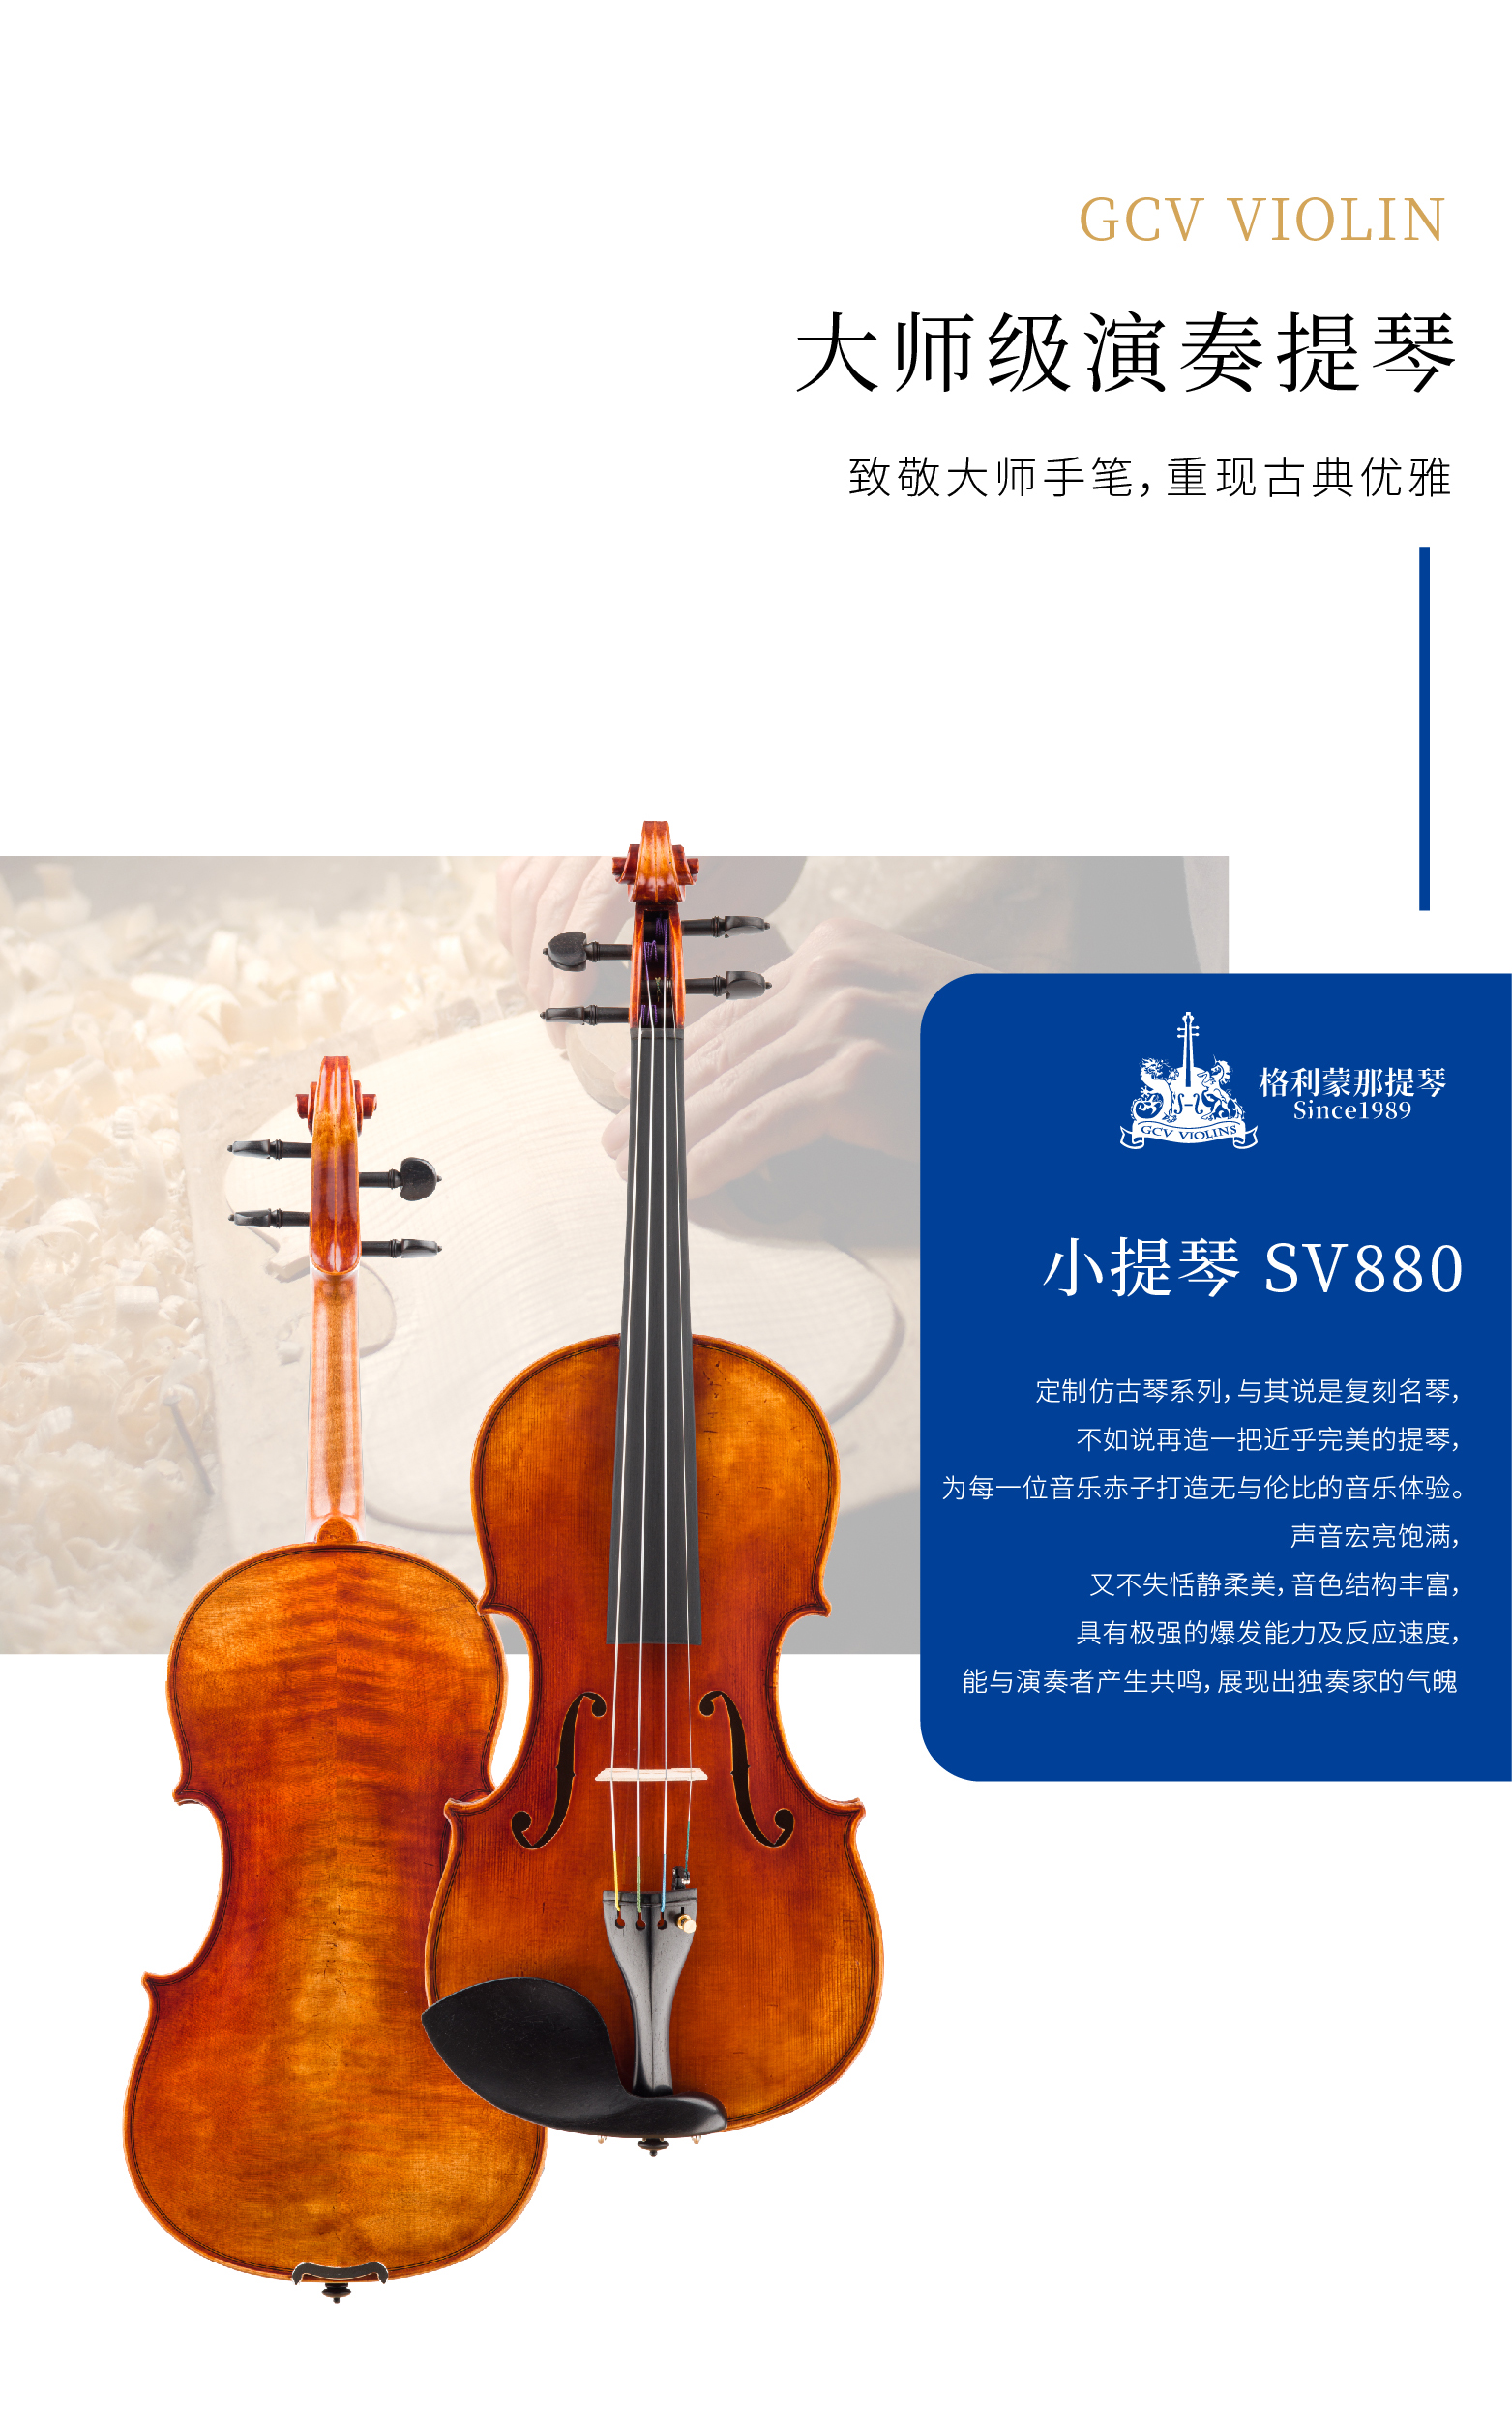 熙珑乐器专营店-详情-v1-2_SV880小提琴_02.jpg